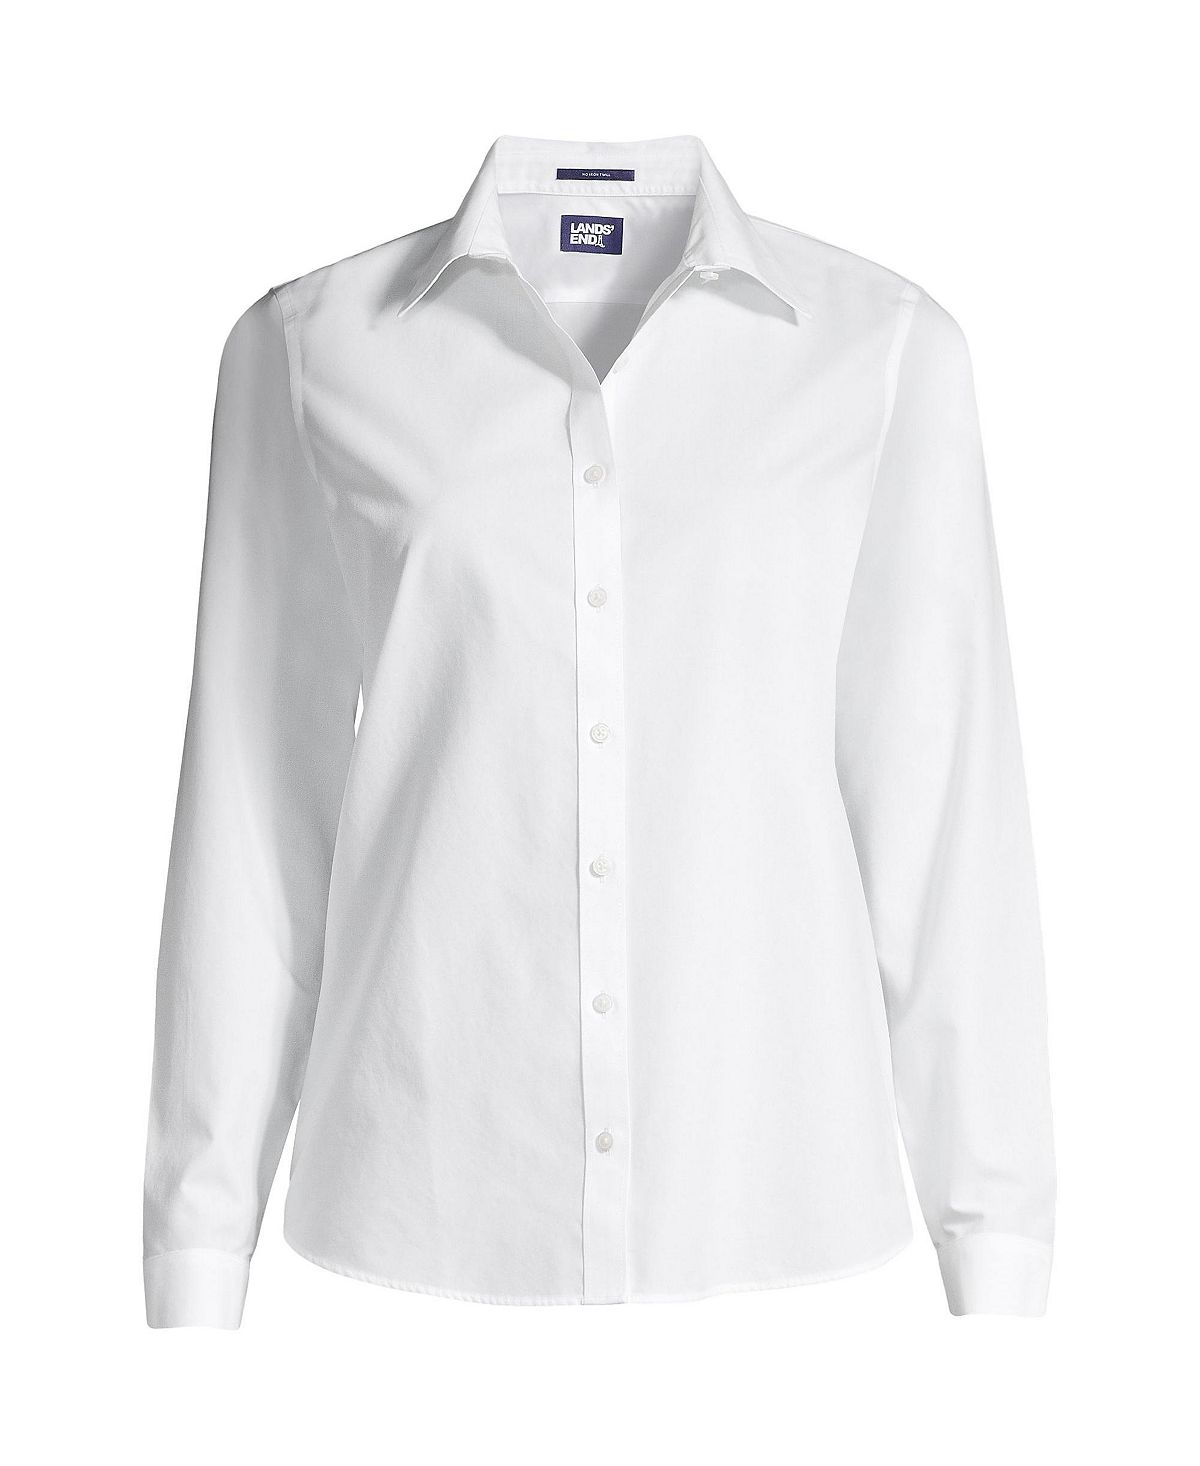 Женская рубашка больших размеров без морщин без железных пуговиц спереди Lands' End, белый